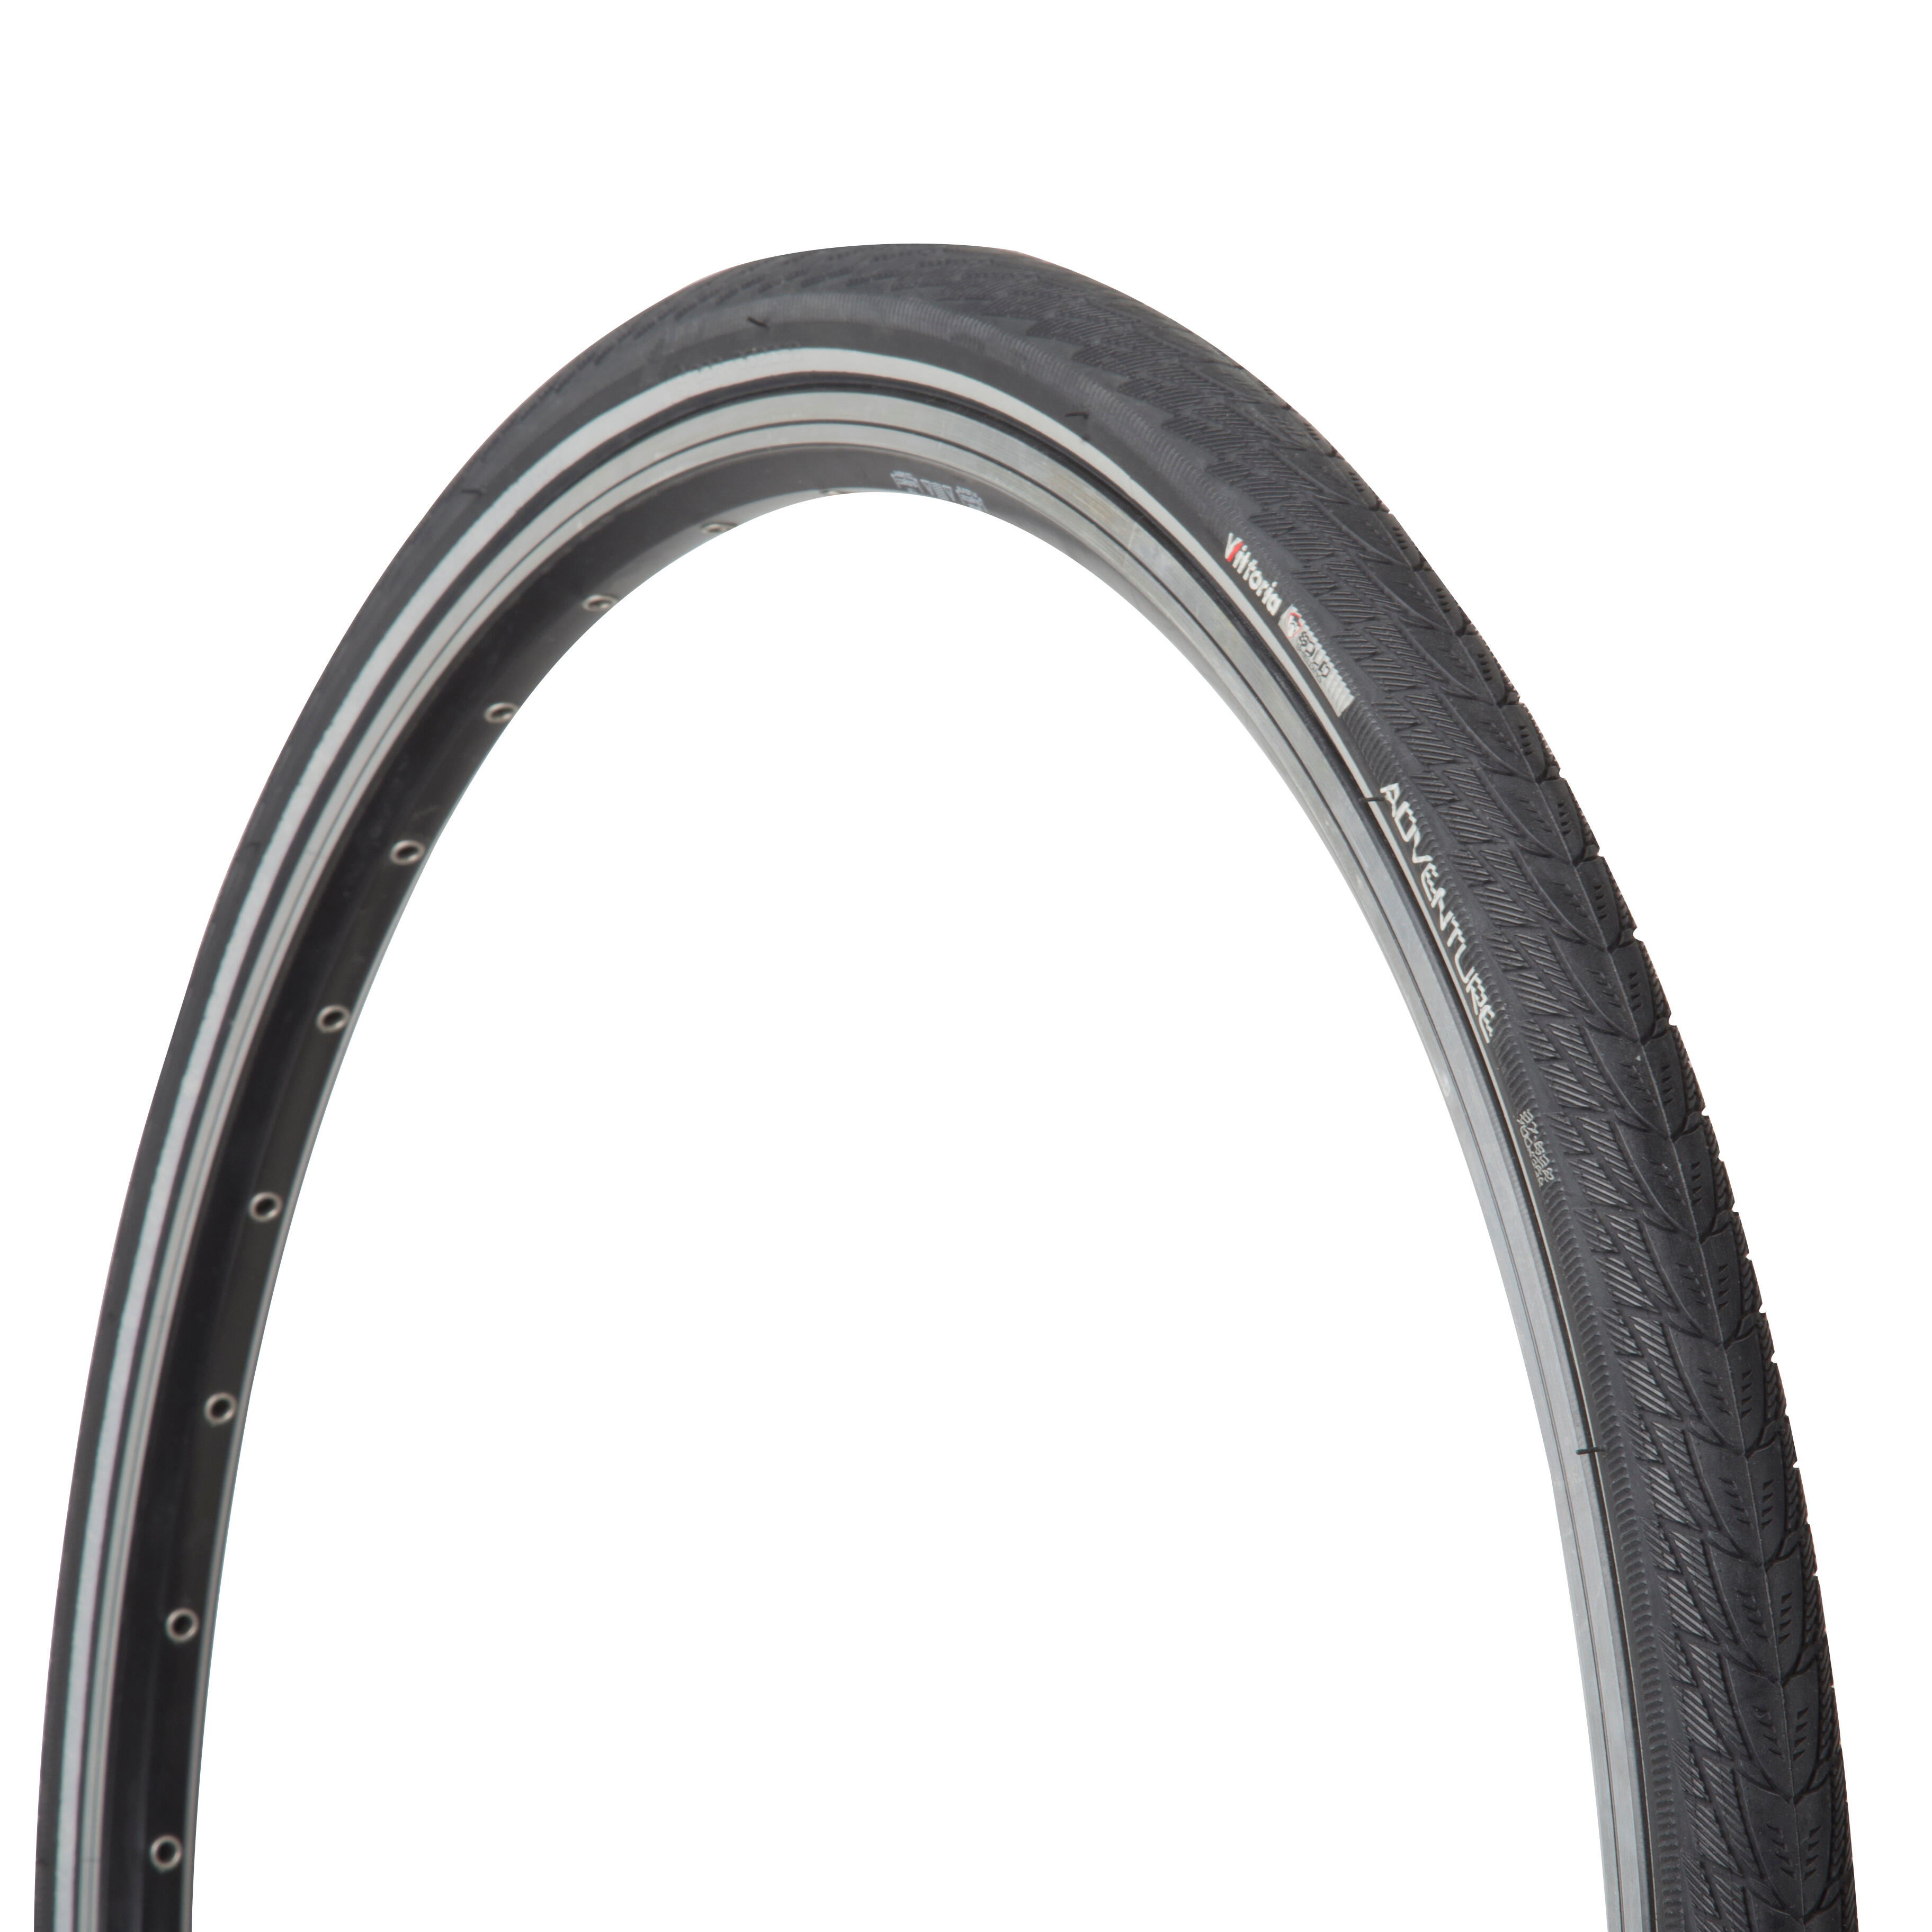 700x350 bike tire